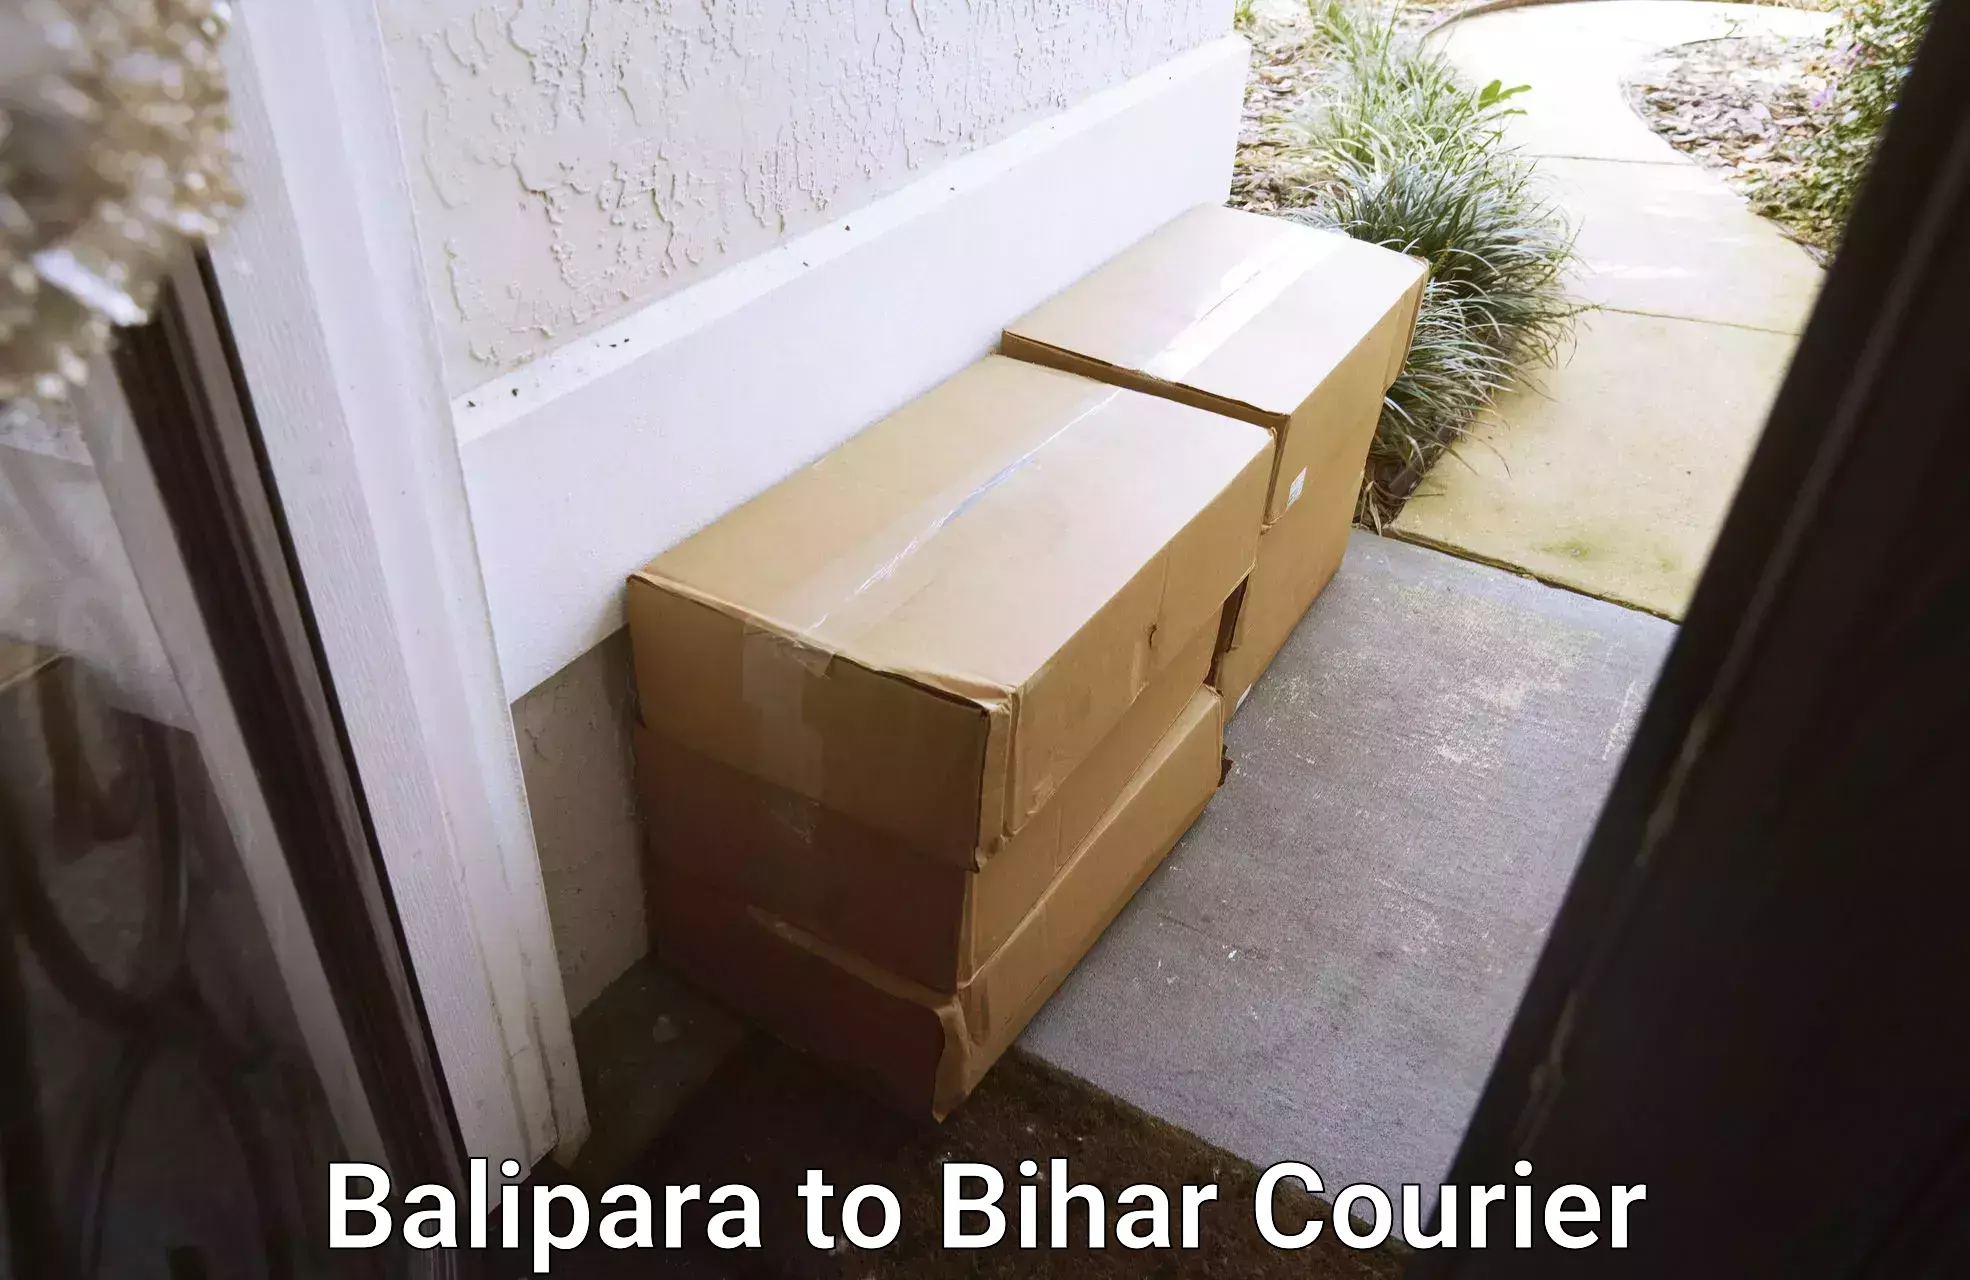 Global shipping networks in Balipara to Bhabua